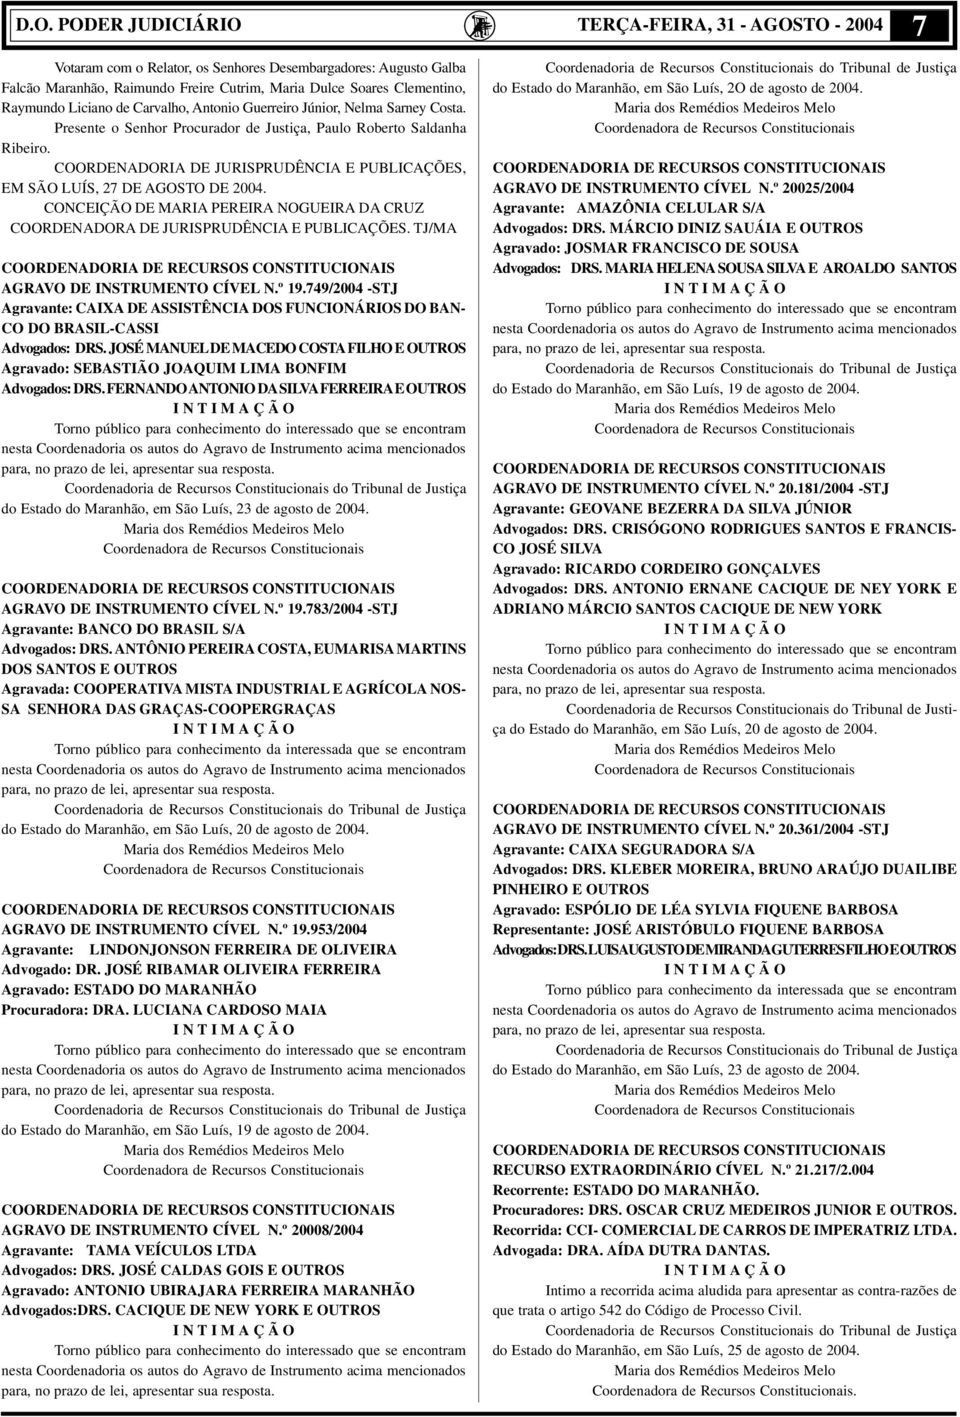 COORDENADORIA DE JURISPRUDÊNCIA E PUBLICAÇÕES, EM SÃO LUÍS, 27 DE AGOSTO DE 2004. CONCEIÇÃO DE MARIA PEREIRA NOGUEIRA DA CRUZ COORDENADORA DE JURISPRUDÊNCIA E PUBLICAÇÕES.